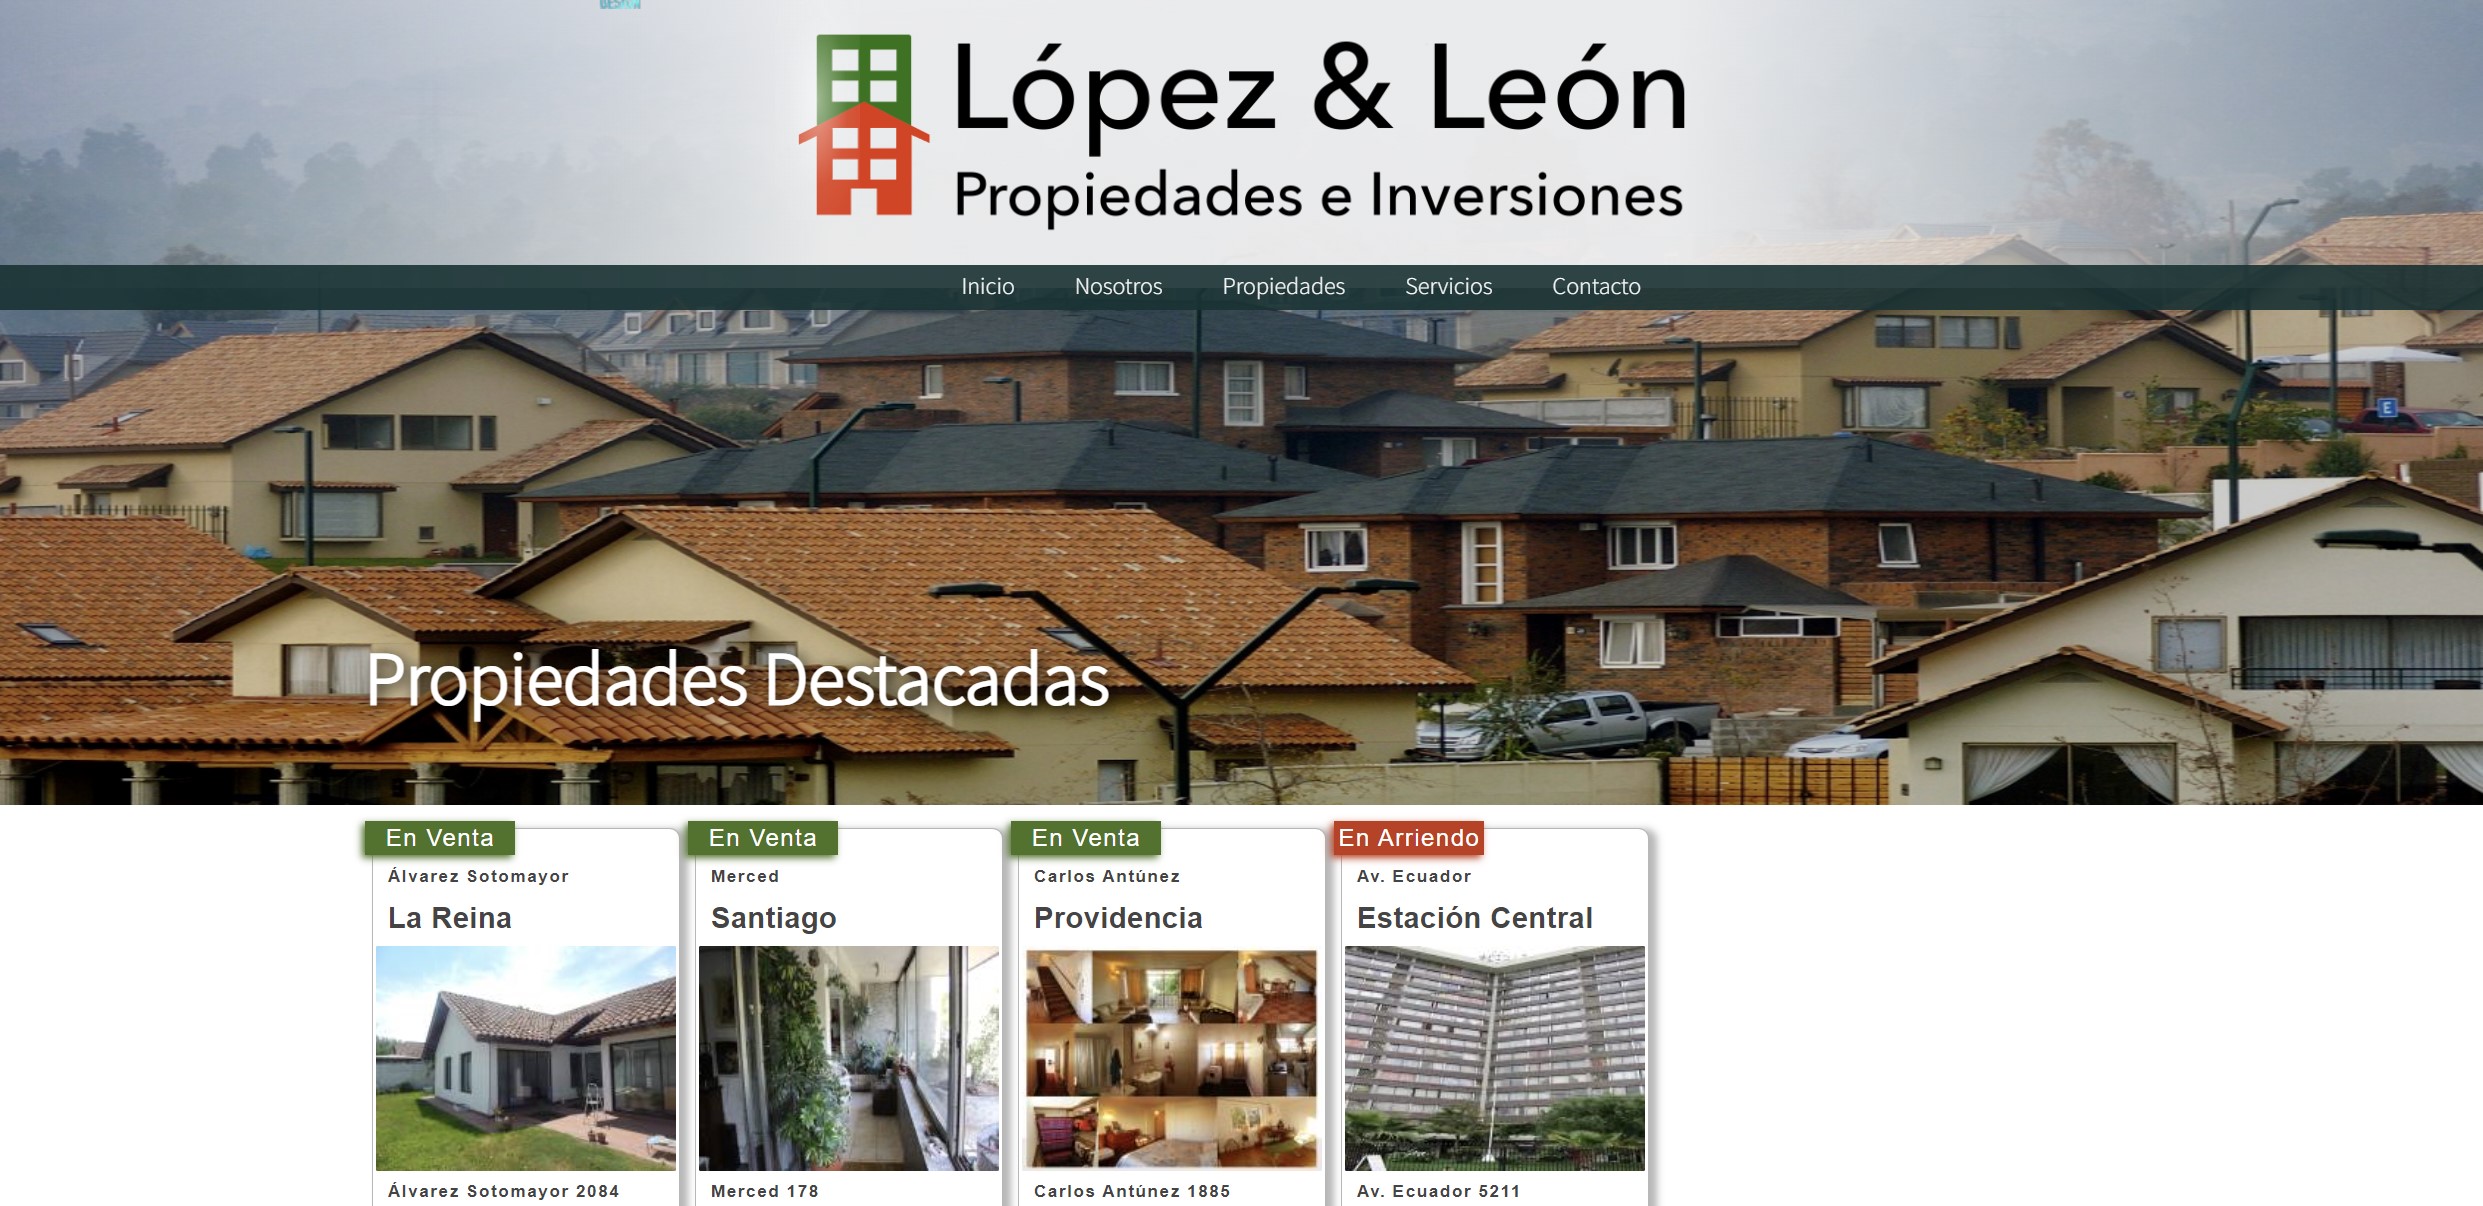 Lopéz & León